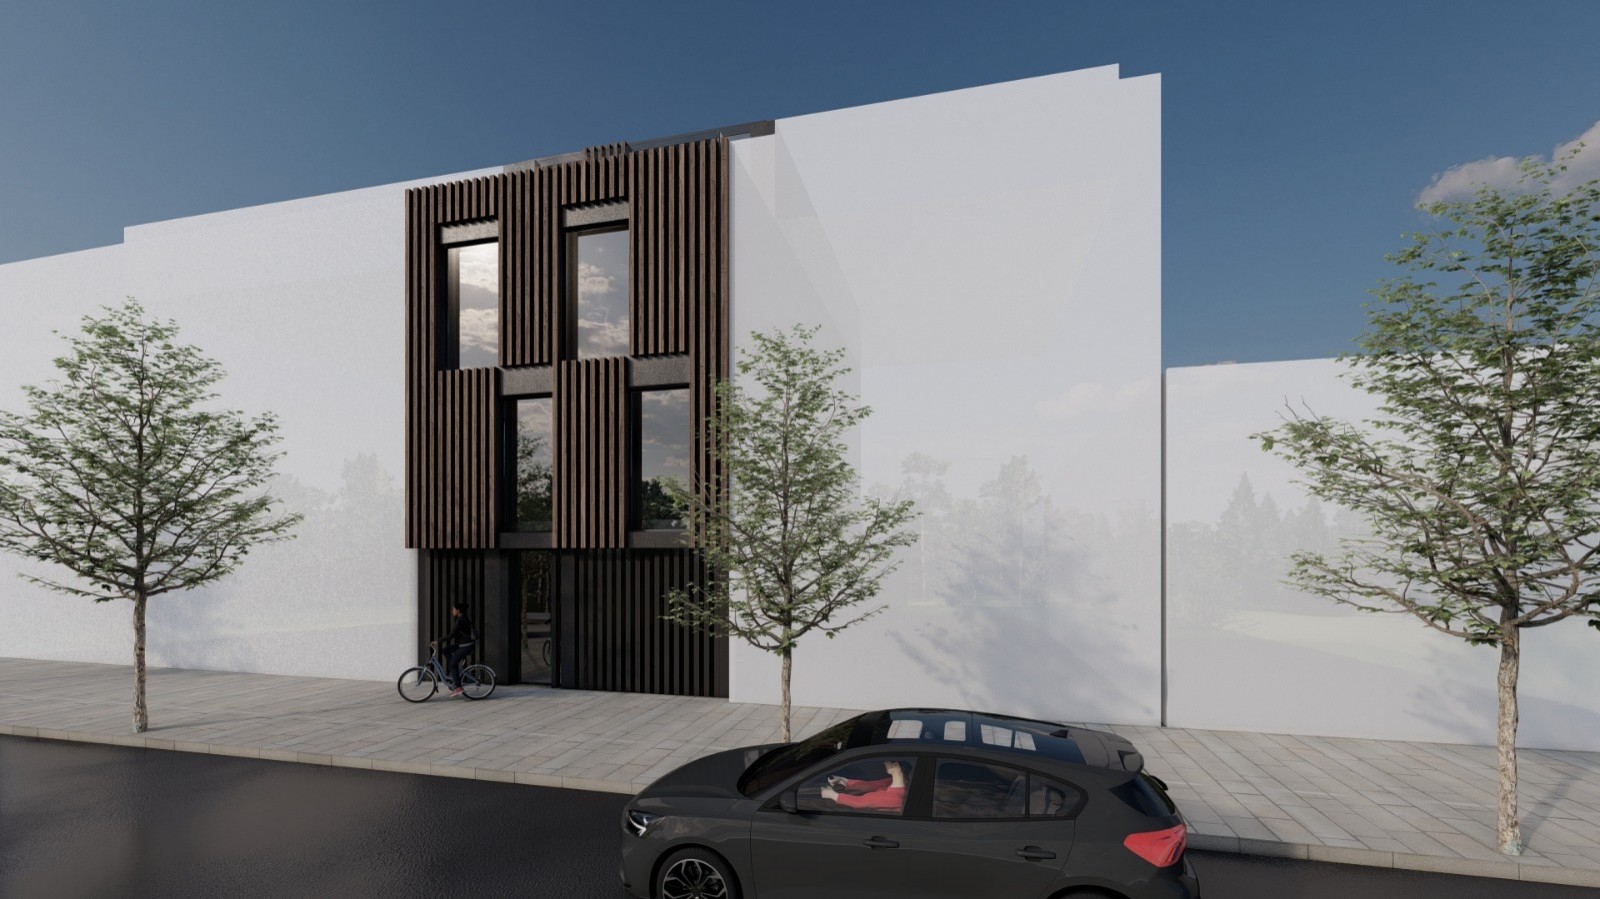 Venda: Prédio com projeto para 4 apartamentos T2, em Matosinhos_210235